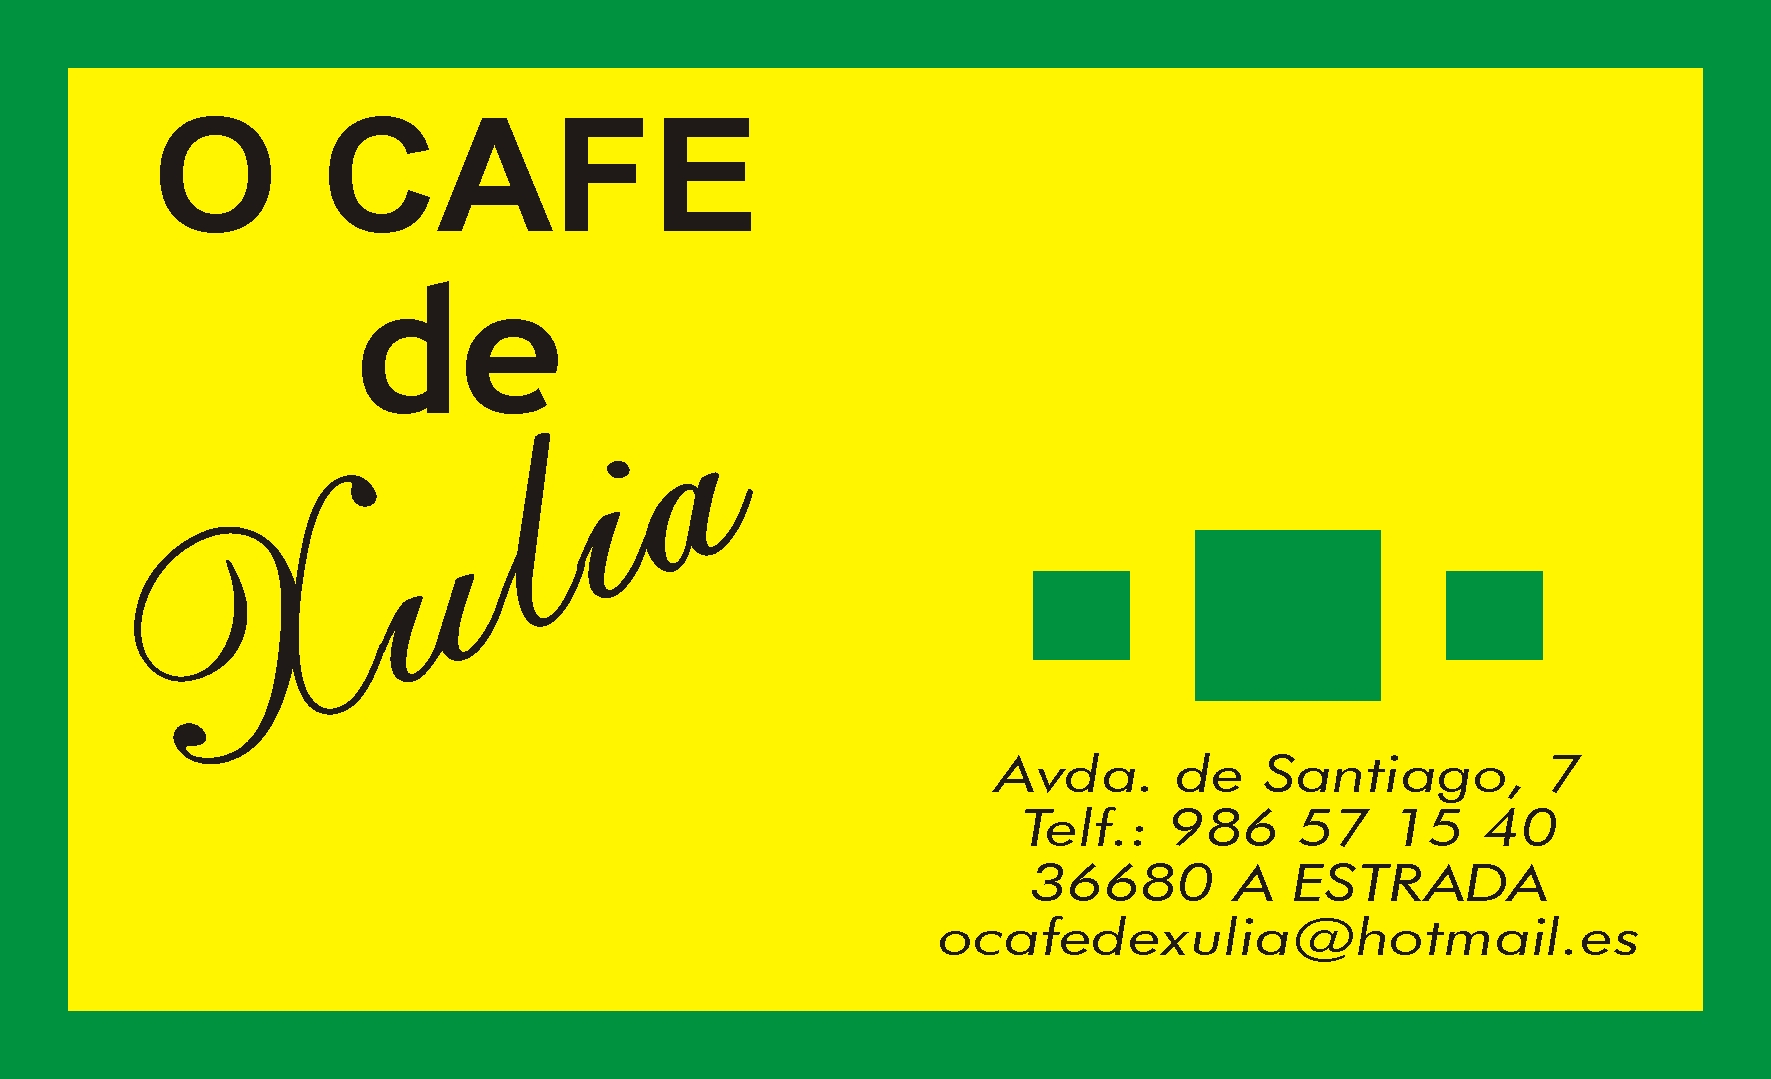 O Cafe de Xulia